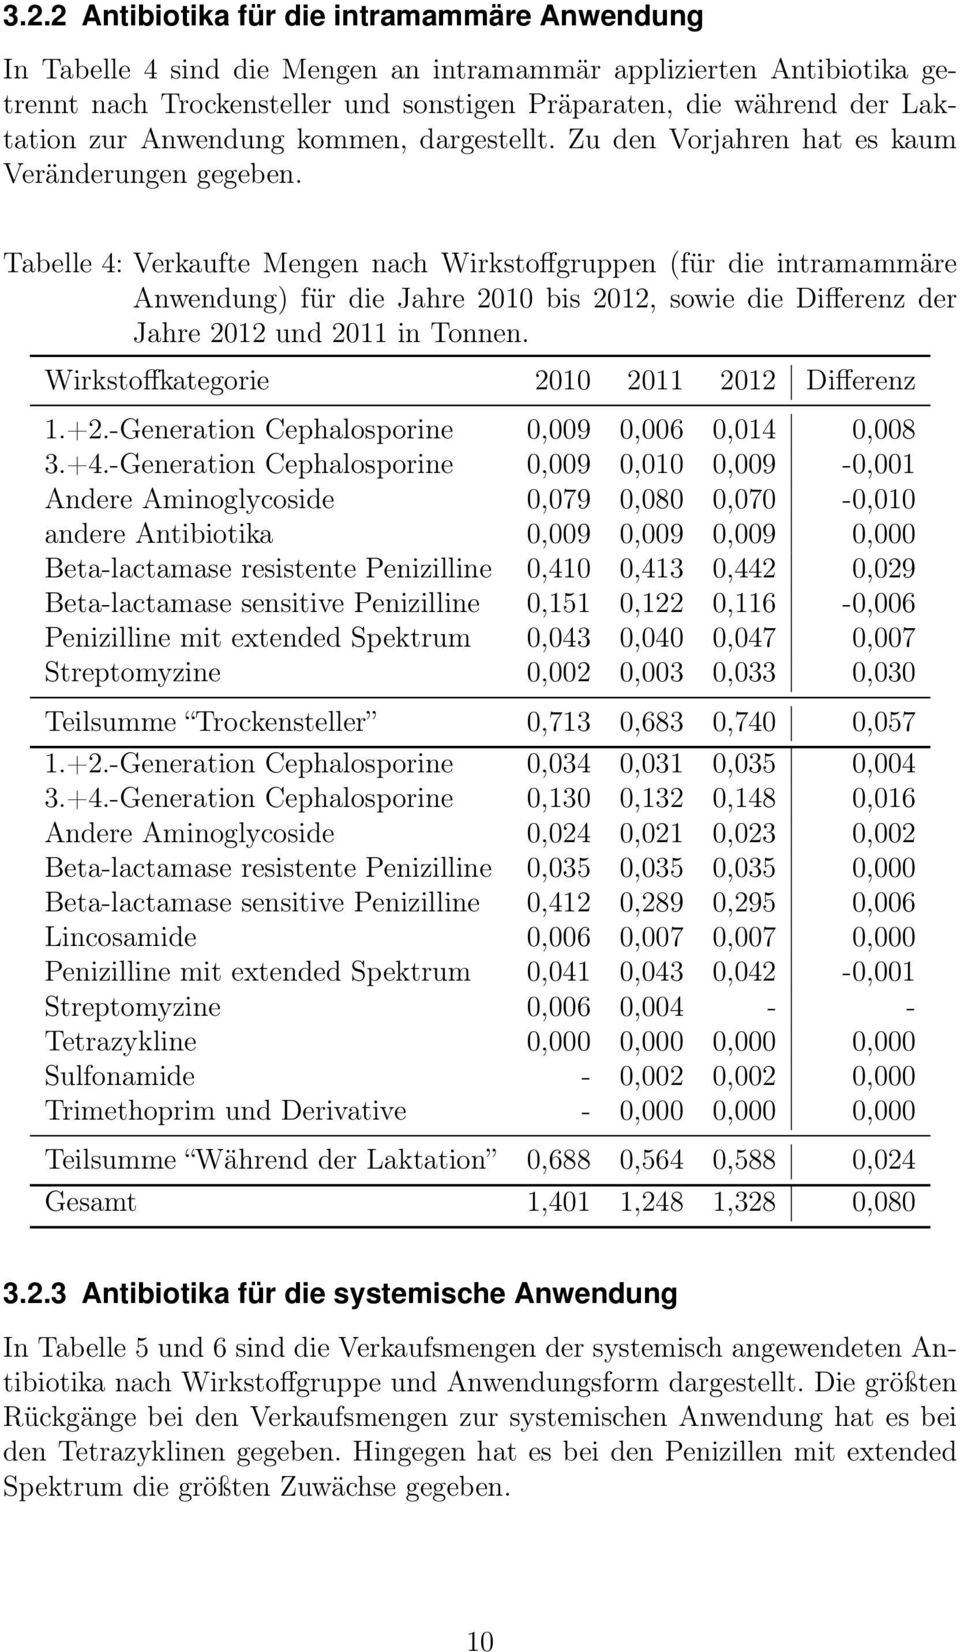 Tabelle 4: Verkaufte Mengen nach Wirkstoffgruppen (für die intramammäre Anwendung) für die Jahre 2010 bis 2012, sowie die Differenz der Jahre 2012 und 2011 in Tonnen.